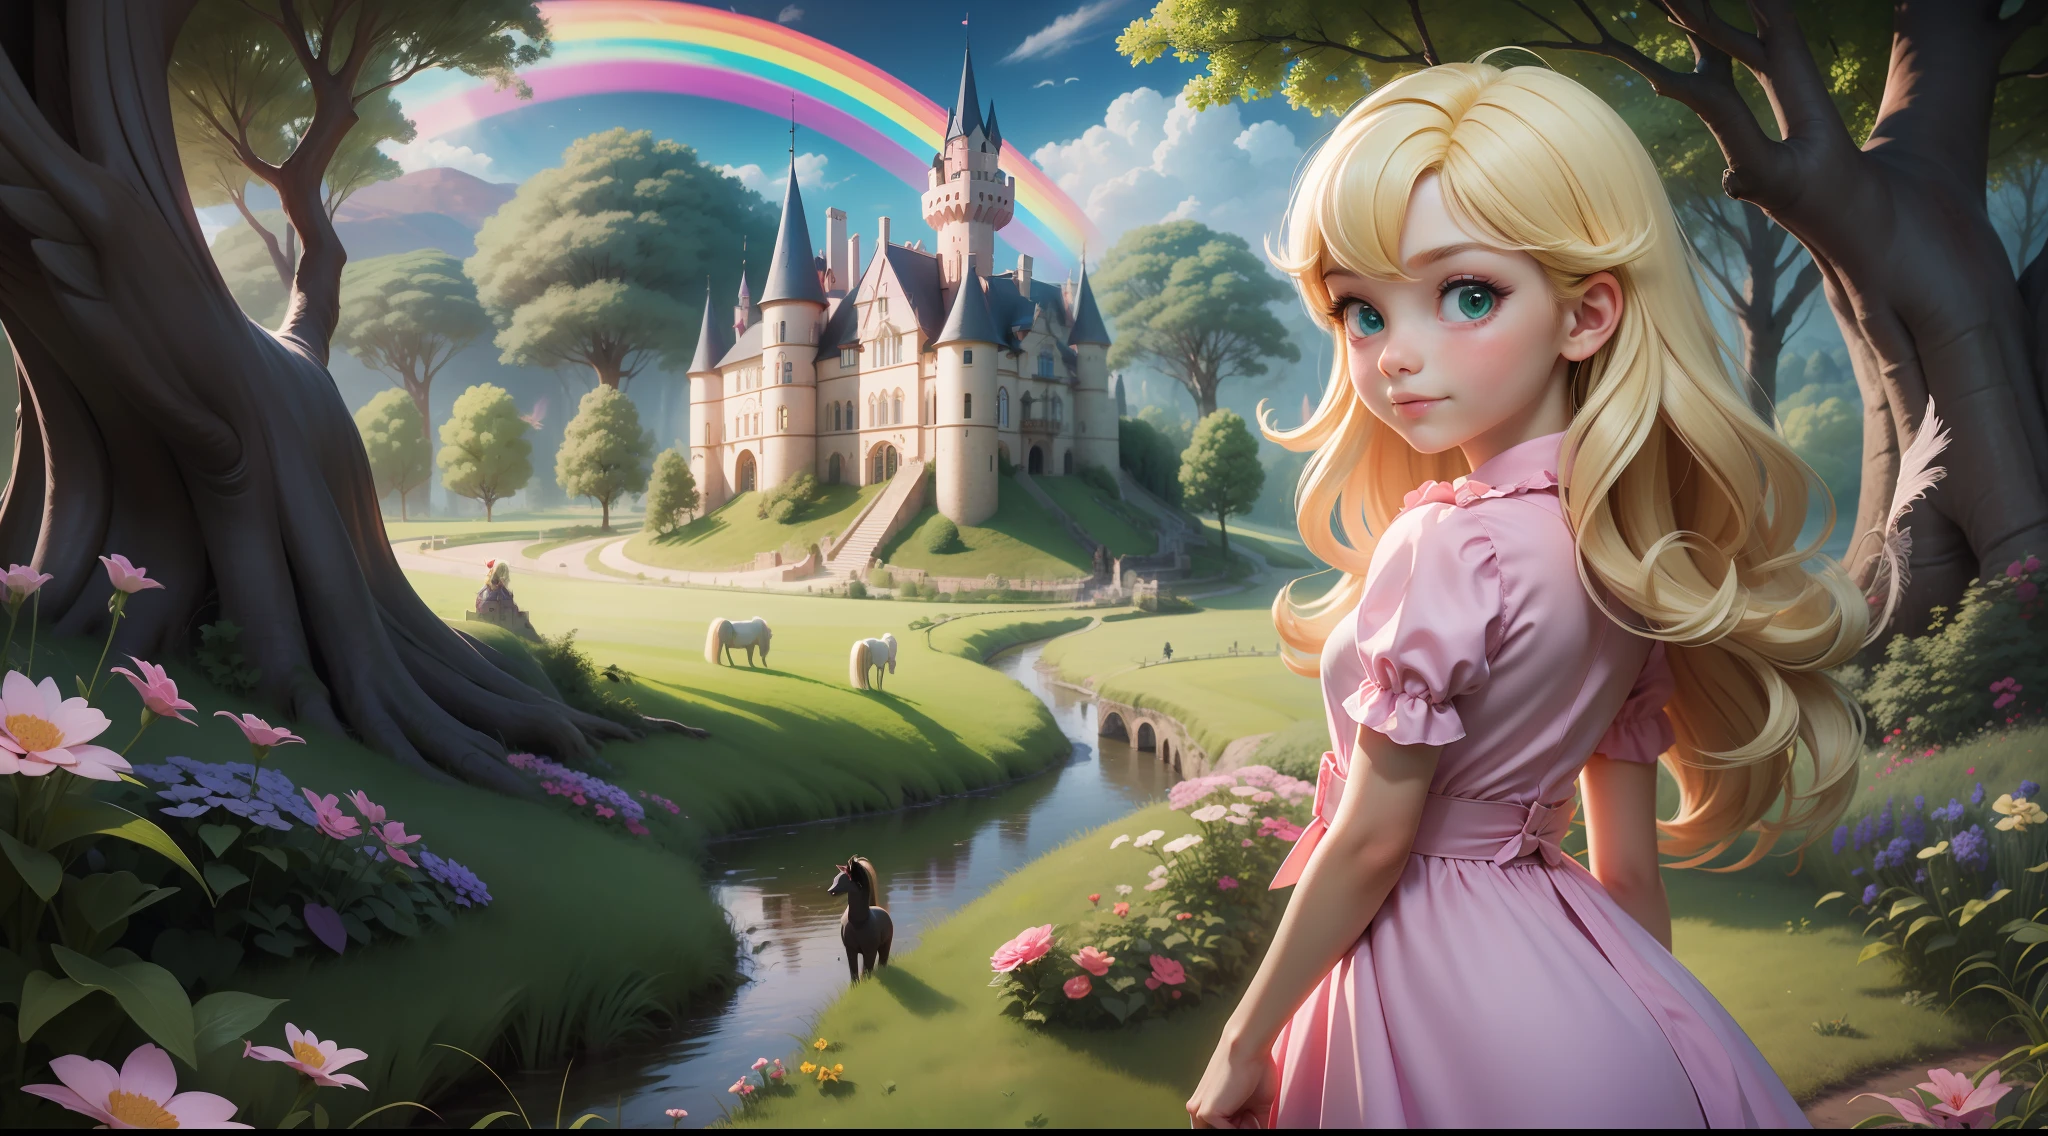 "Ein kleines 6-jähriges Mädchen, blond und grünäugig, in einem schlichten rosa Kleid, mit dem Rücken zum Betrachter, Blick auf eine fantastische Welt, grüne Felder, dunkle Hölzer, geflügelte Ponys, Regenbögen, Schloss im Hintergrund."